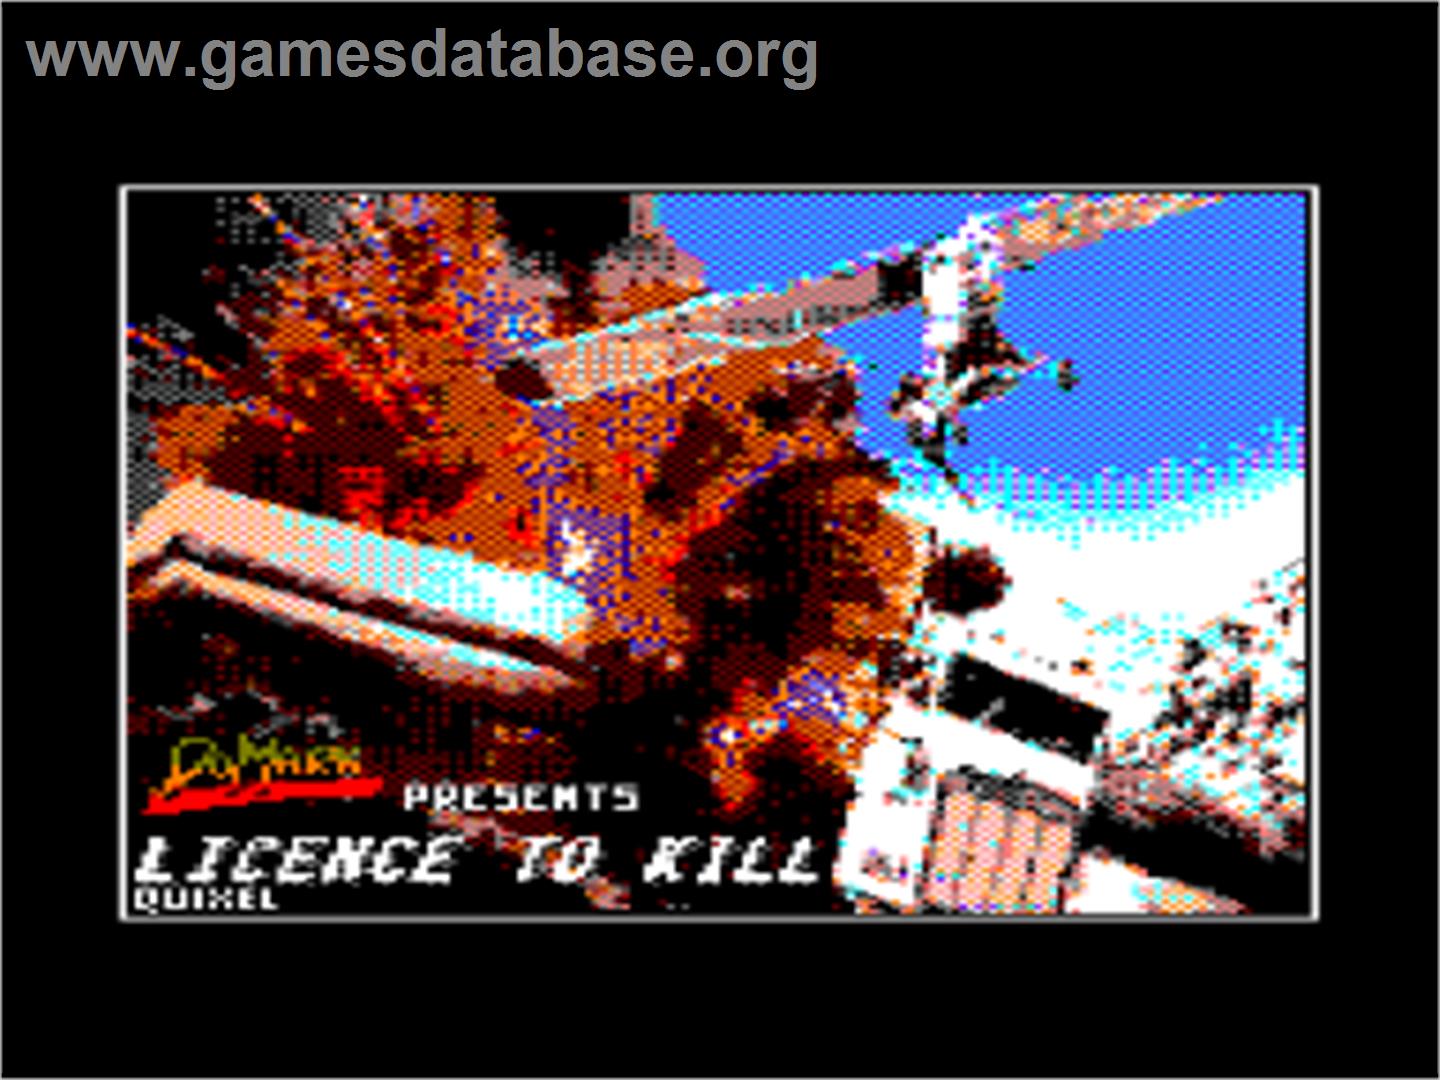 007: Licence to Kill - Amstrad CPC - Artwork - Title Screen